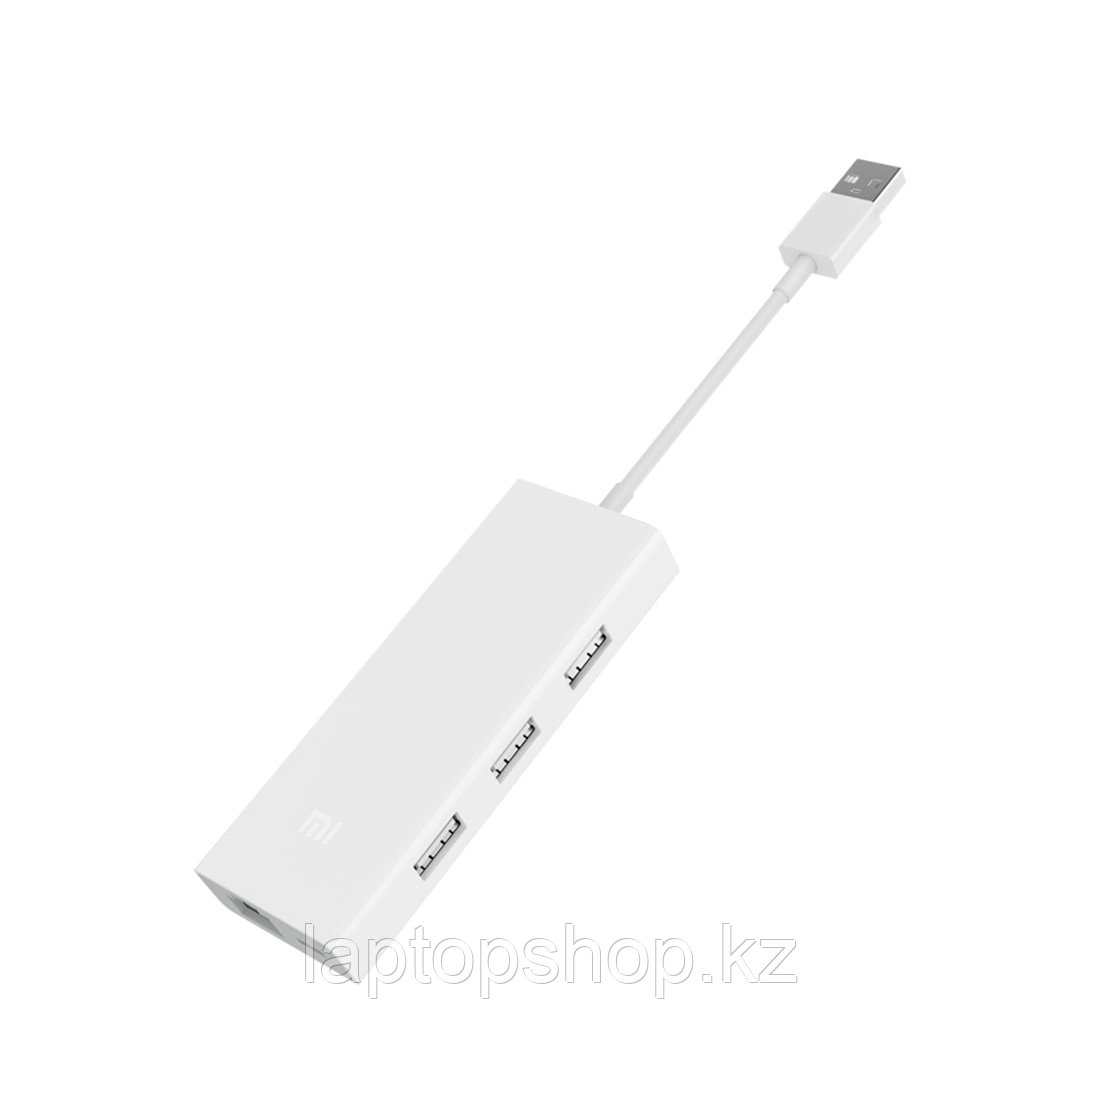 Универсальный расширитель USB Xiaomi 3.0 Hub Gigabit Ethernet Multi Adapter Белый, фото 1